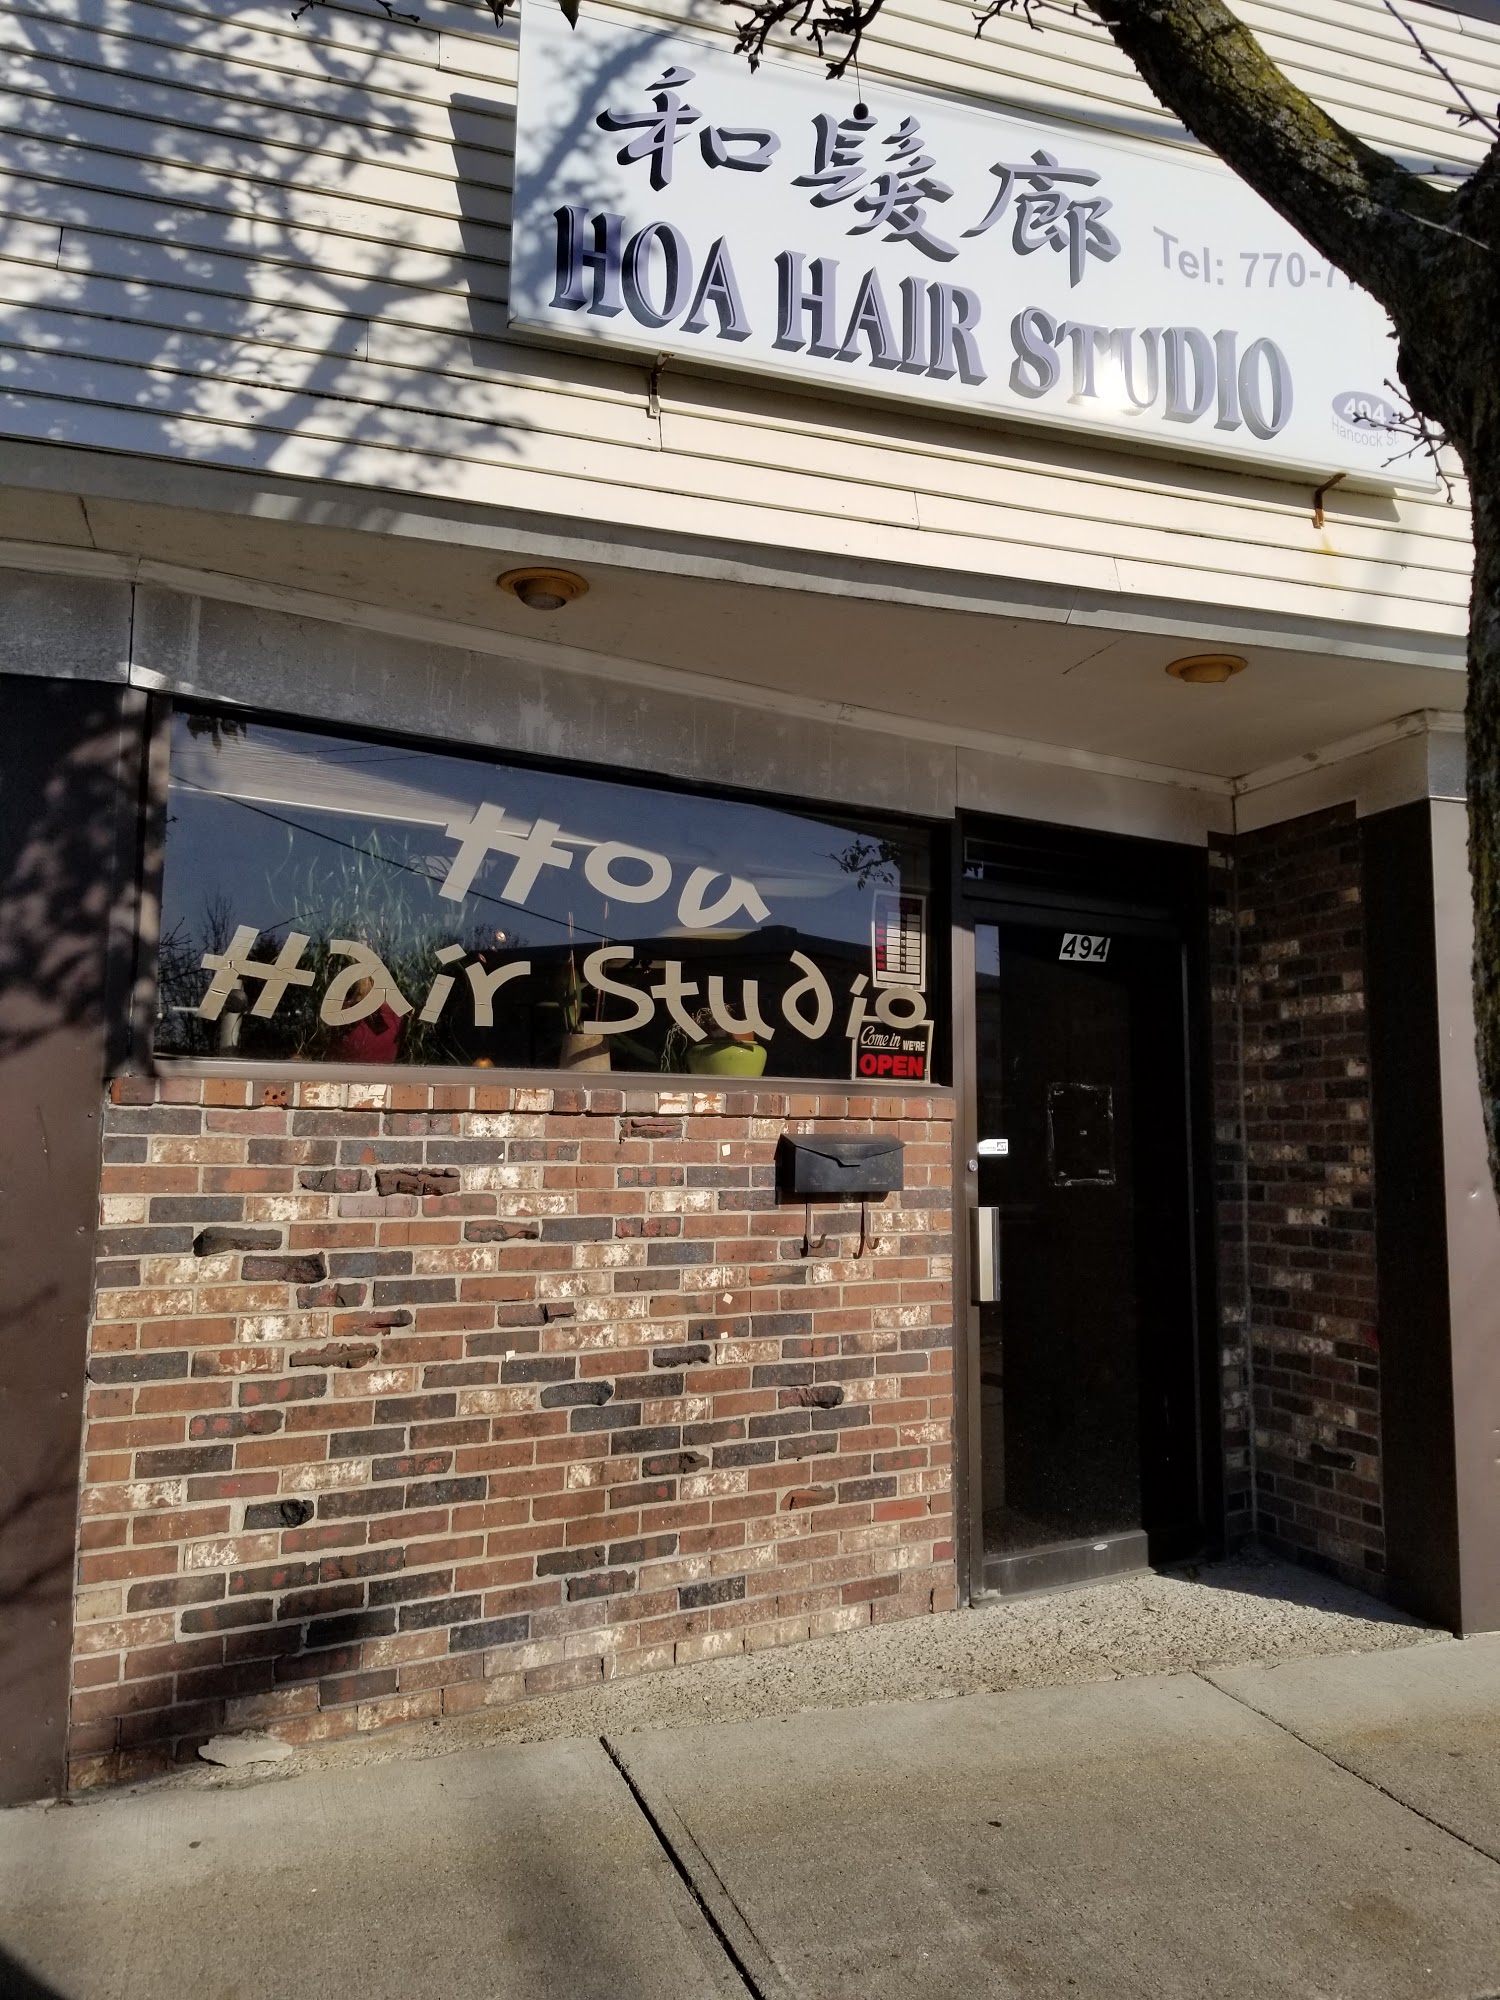 Hoa Hair Salon